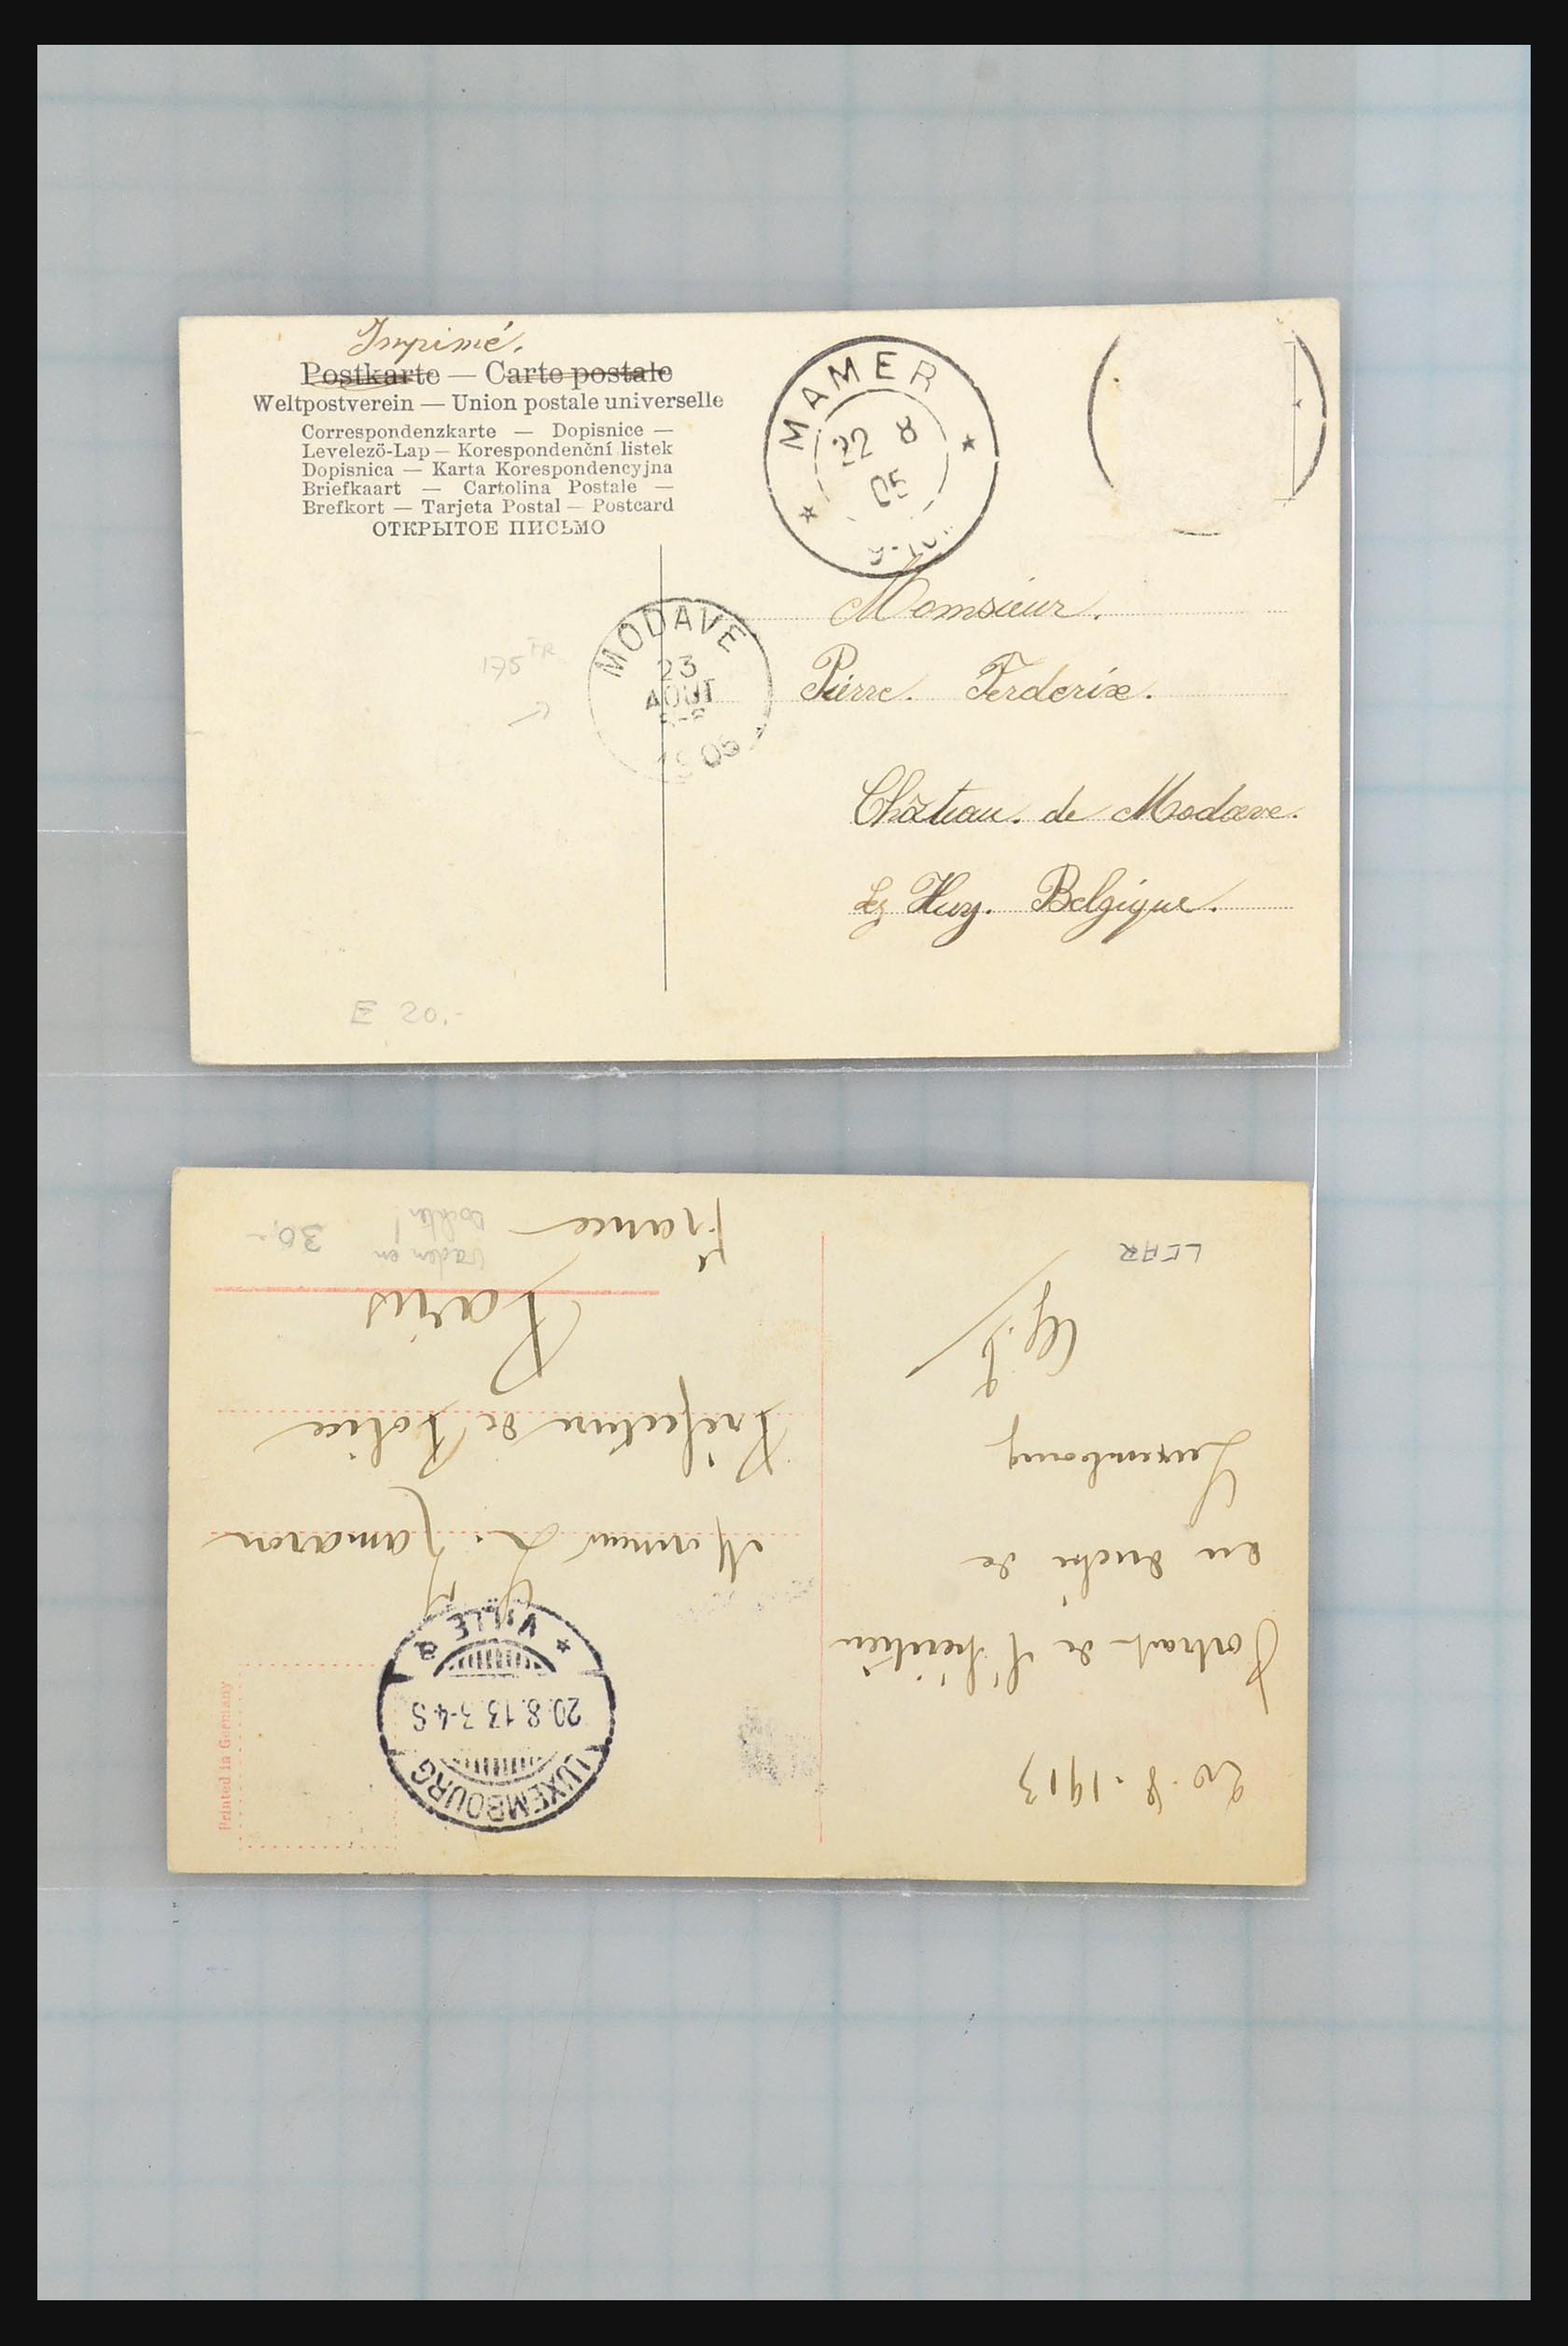 31358 017 - 31358 Portugal/Luxemburg/Griekenland brieven 1880-1960.